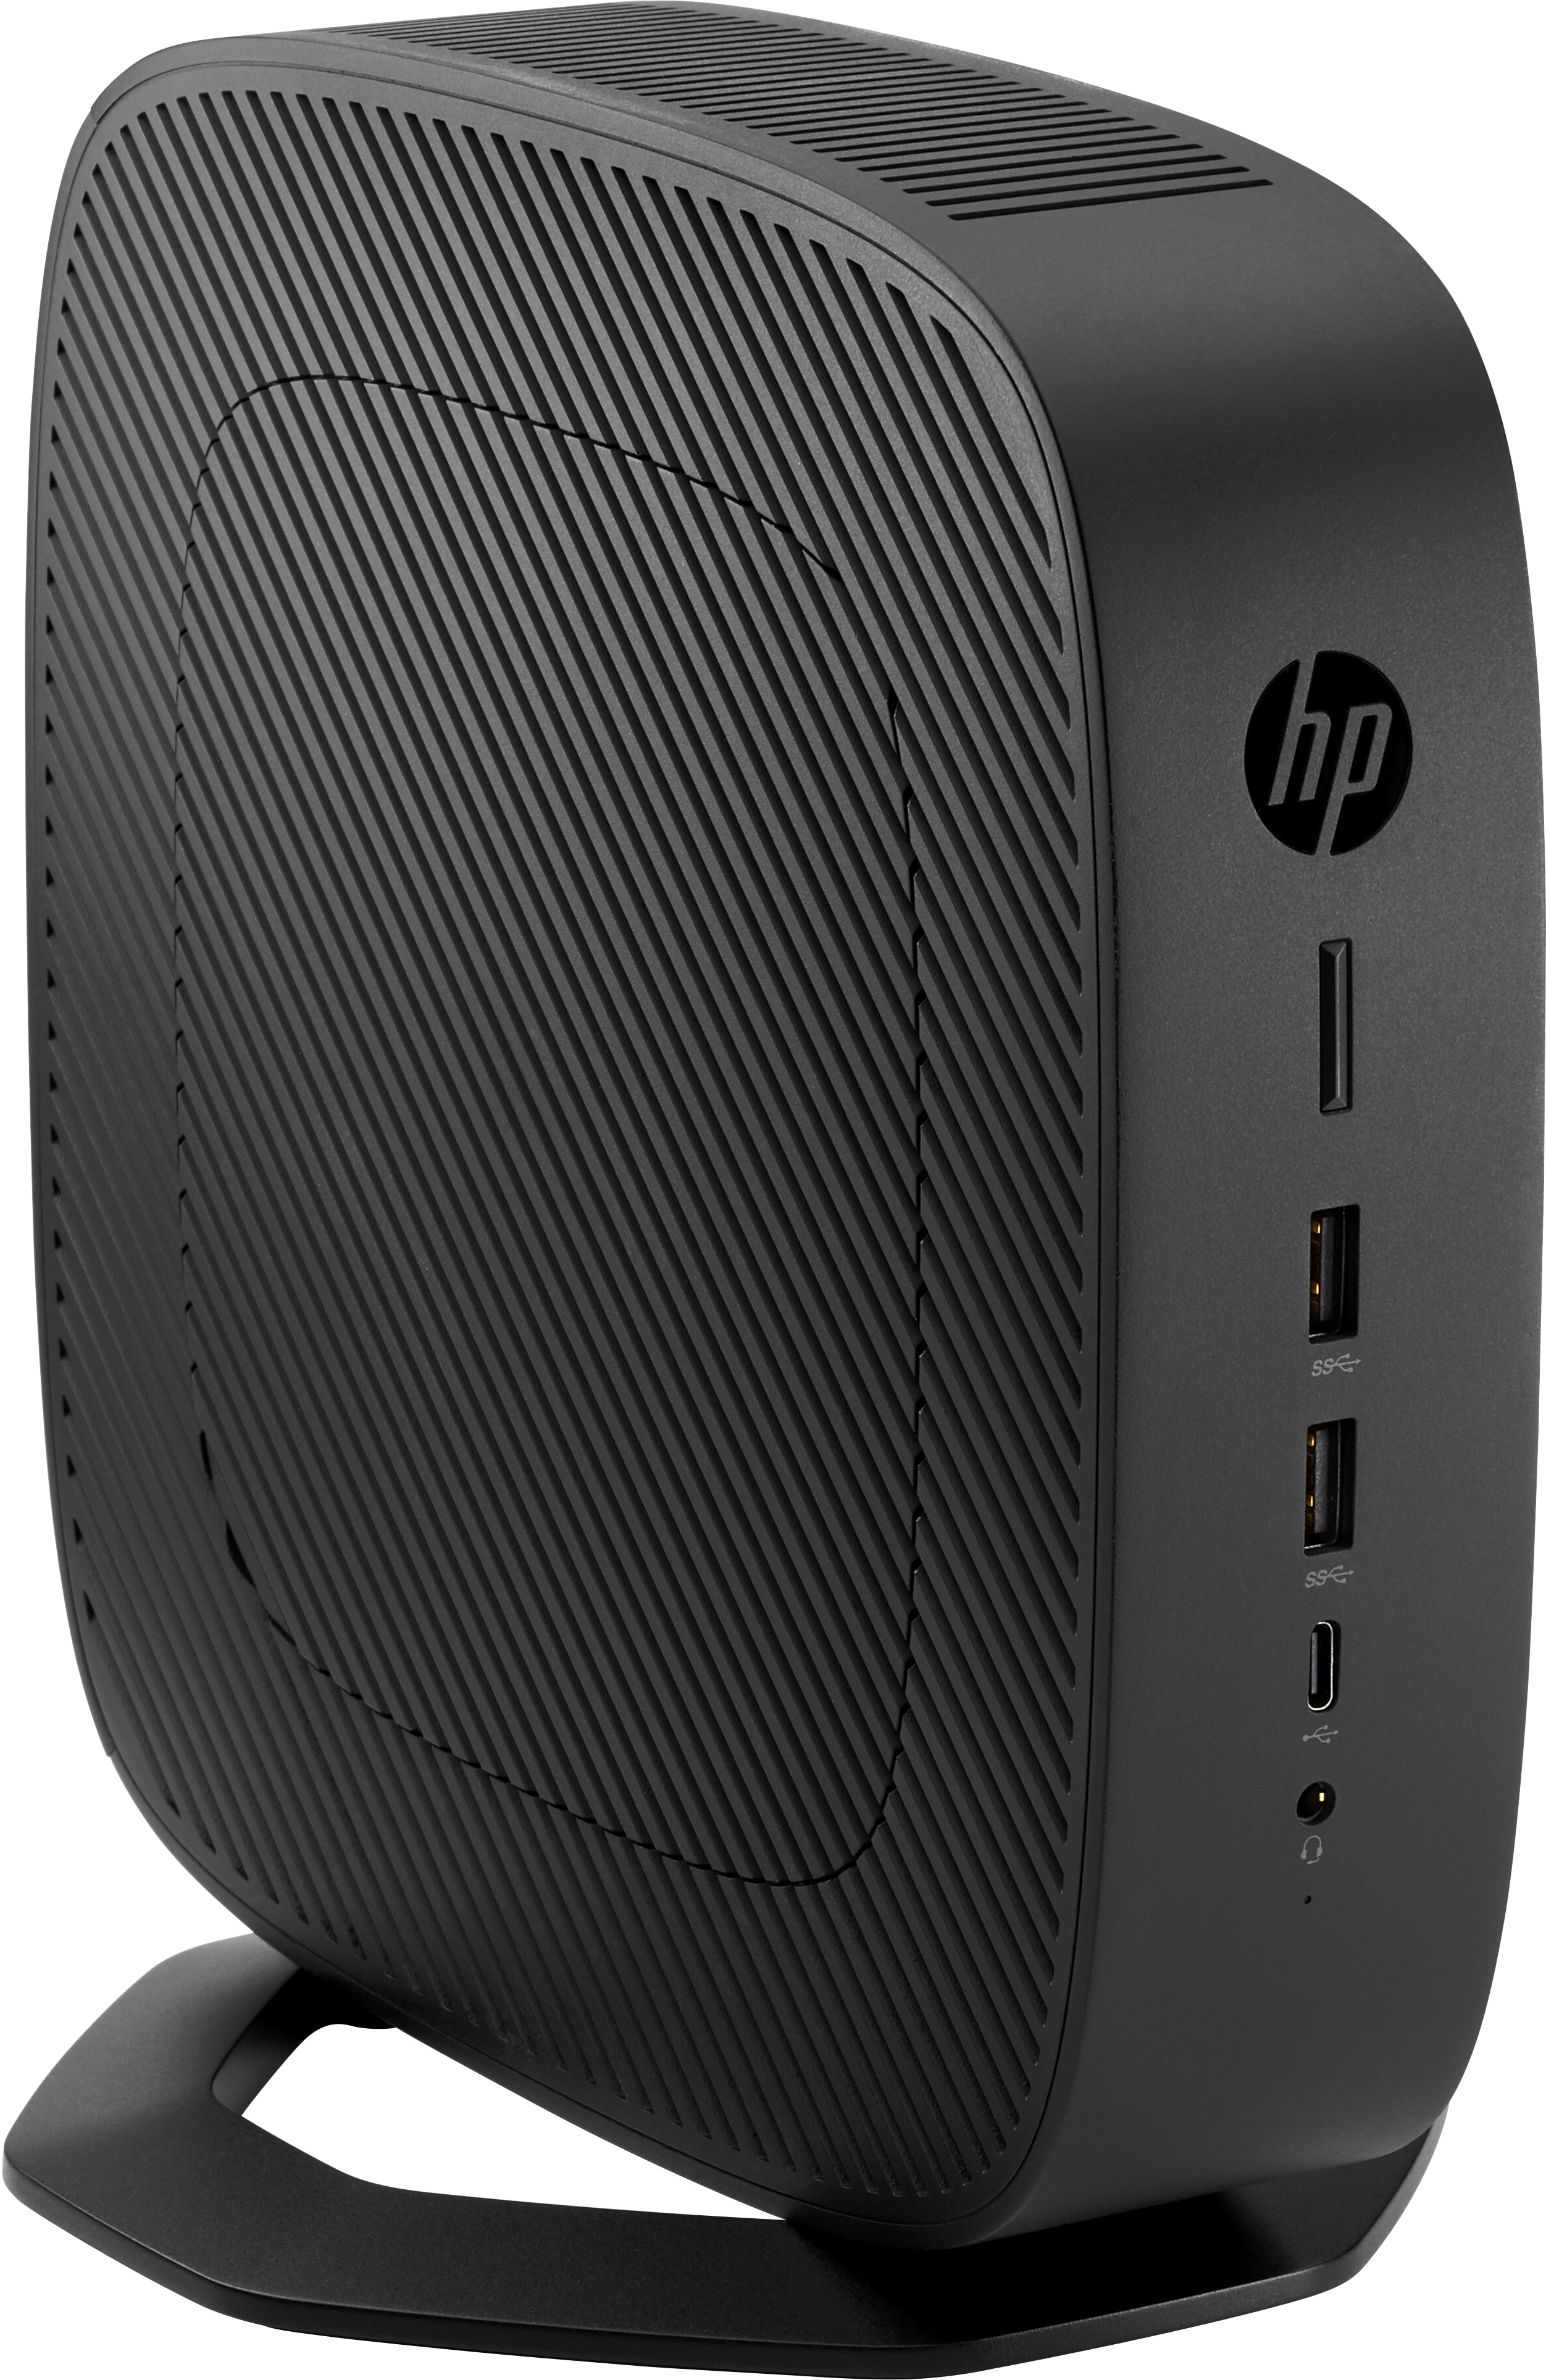 HP t740 3.25 GHz V1756B Windows 10 IoT Enterprise 1.33 kg Black